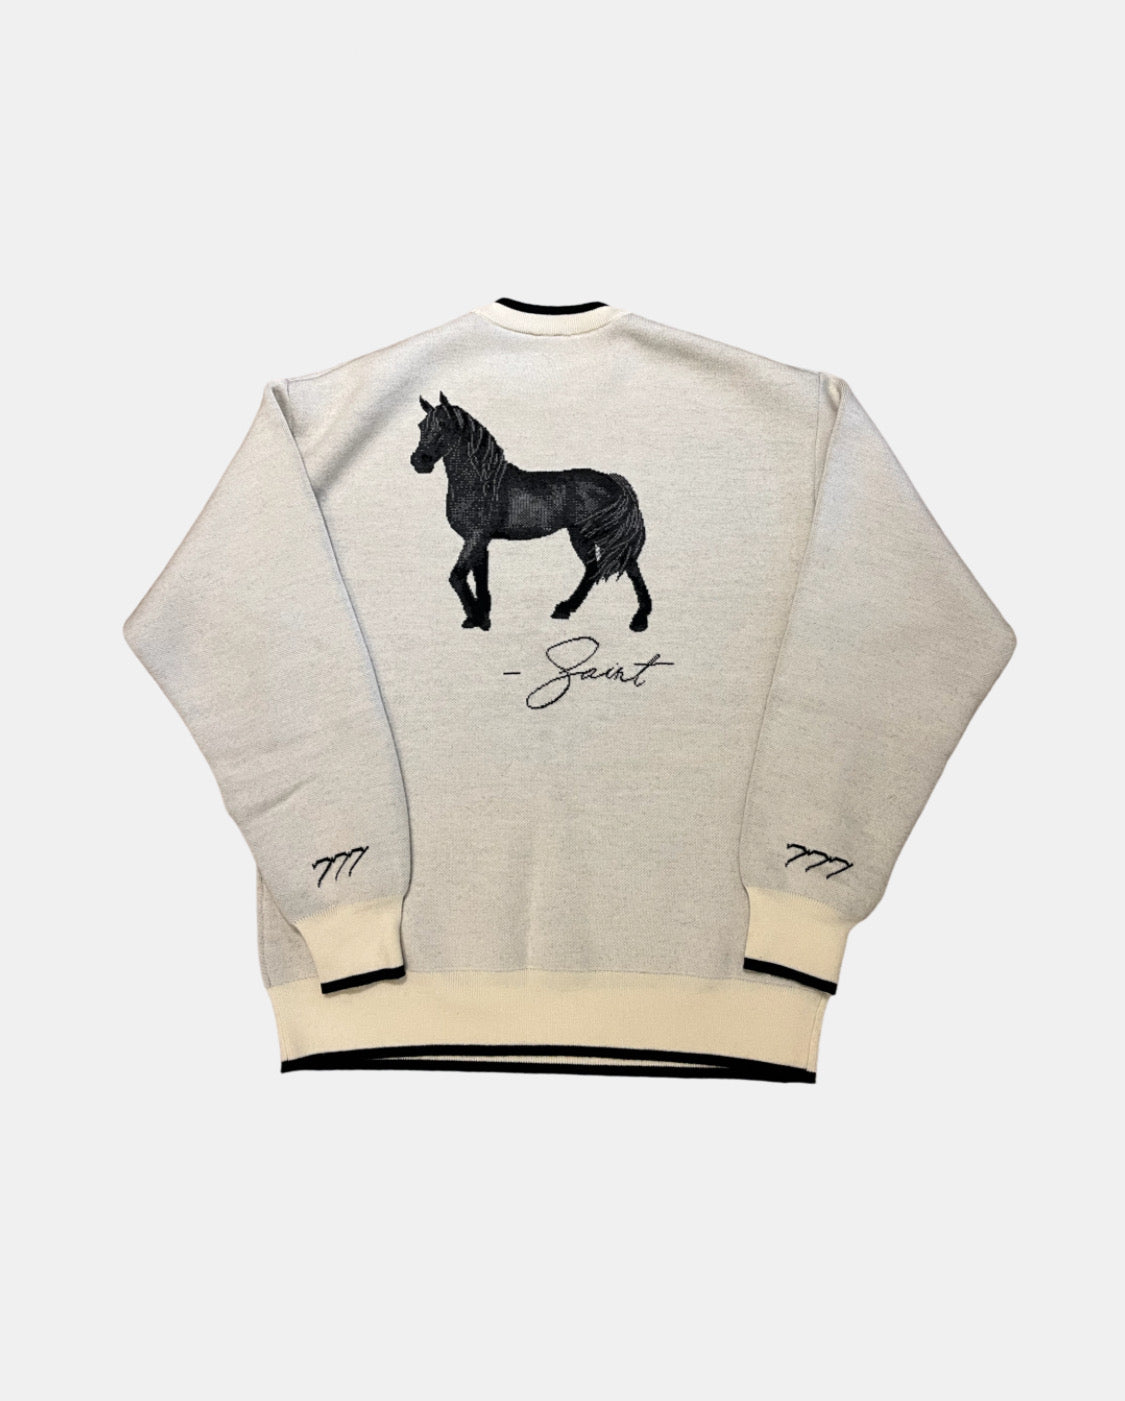 Merino horse sweater